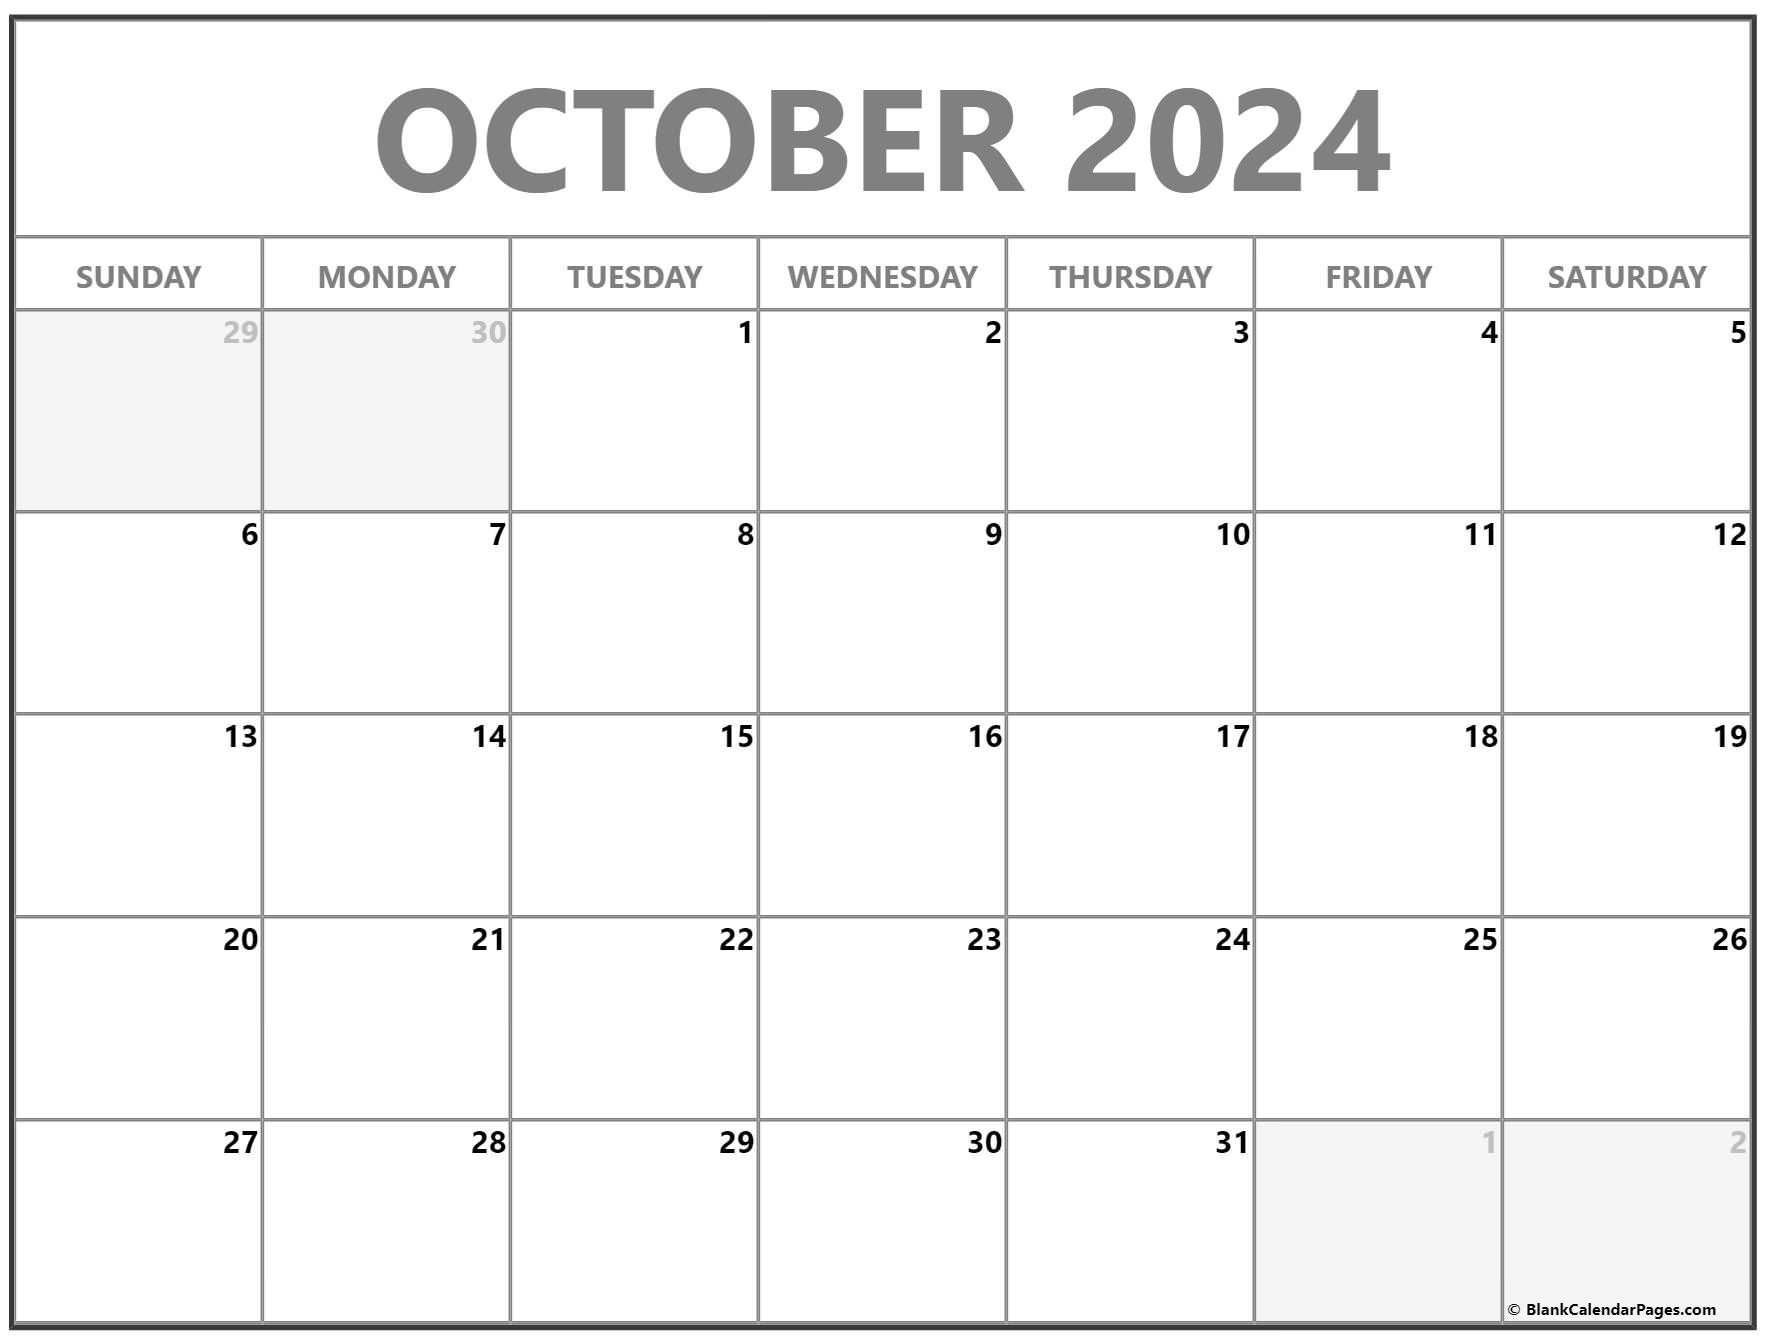 october-2024-calendar-free-printable-calendar